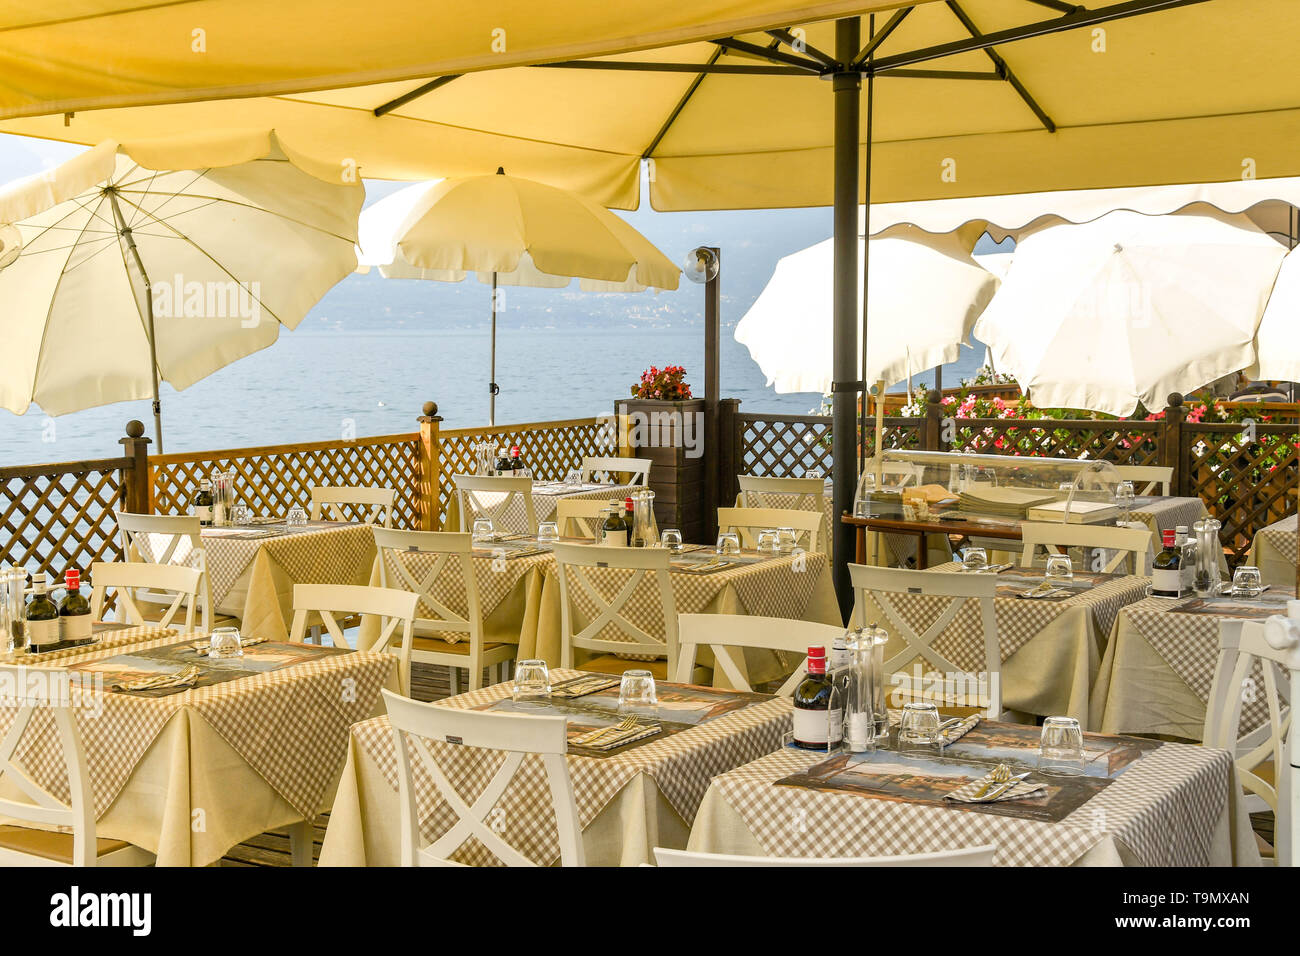 TORRI DEL BENACO, Lac de Garde, ITALIE - Septembre 2018 : salle à manger extérieure avec des tables disposées sous un auvent dans un restaurant sur le lac de Garde Banque D'Images